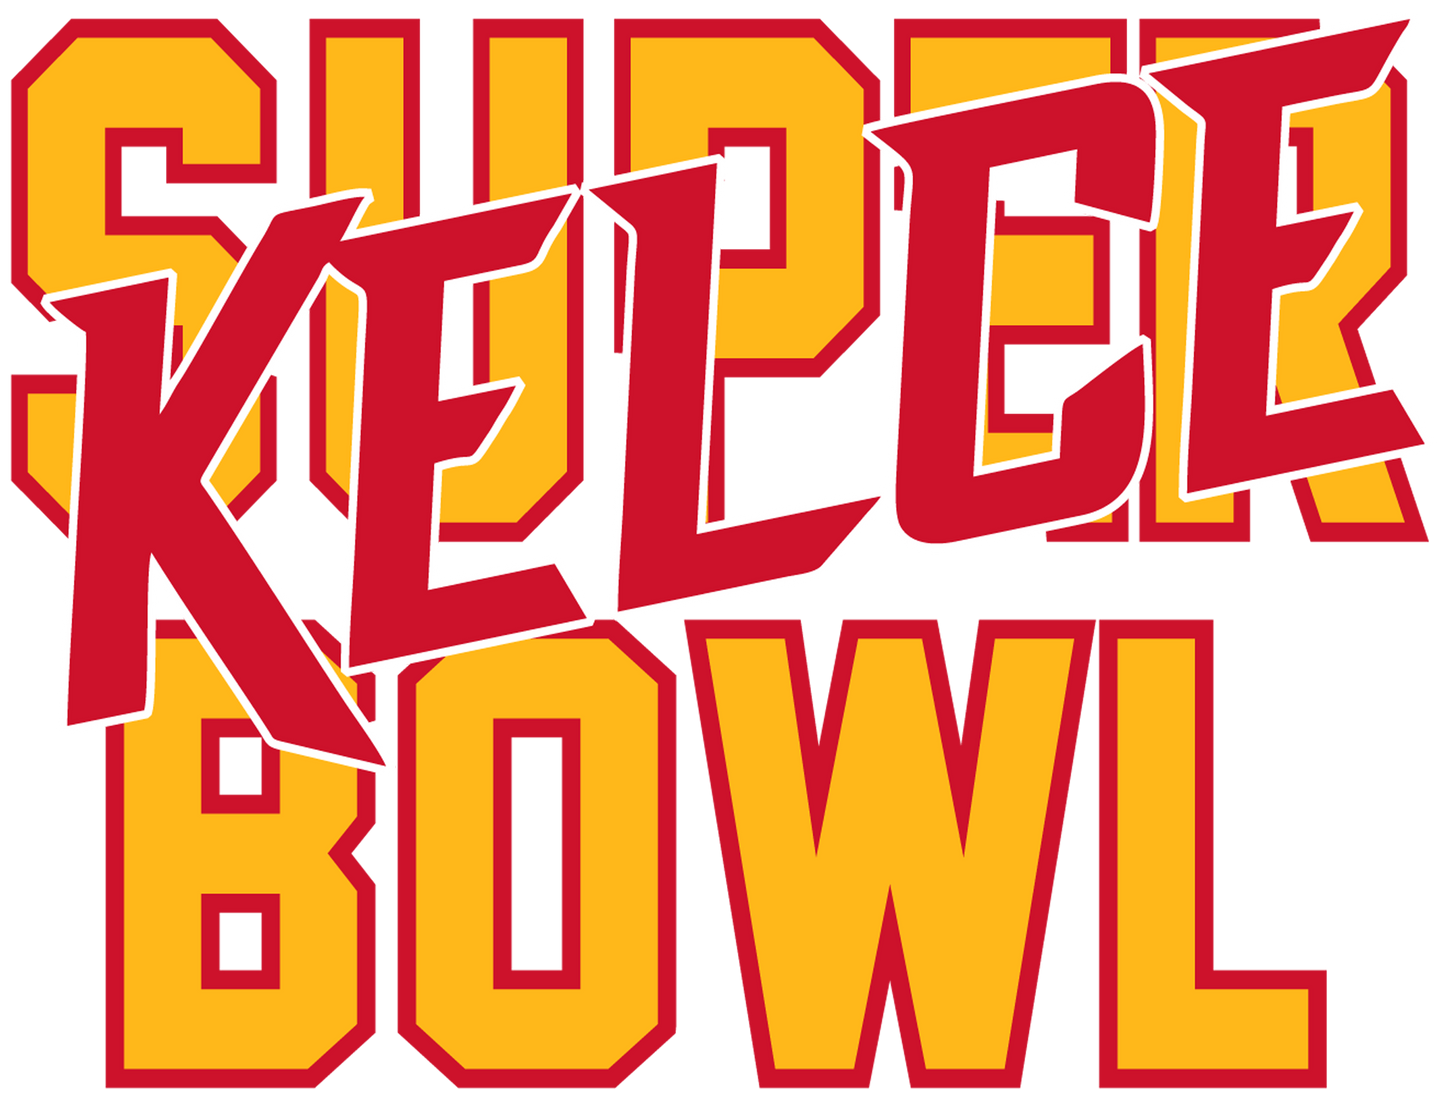 Super Kelce Bowl 1 DTF